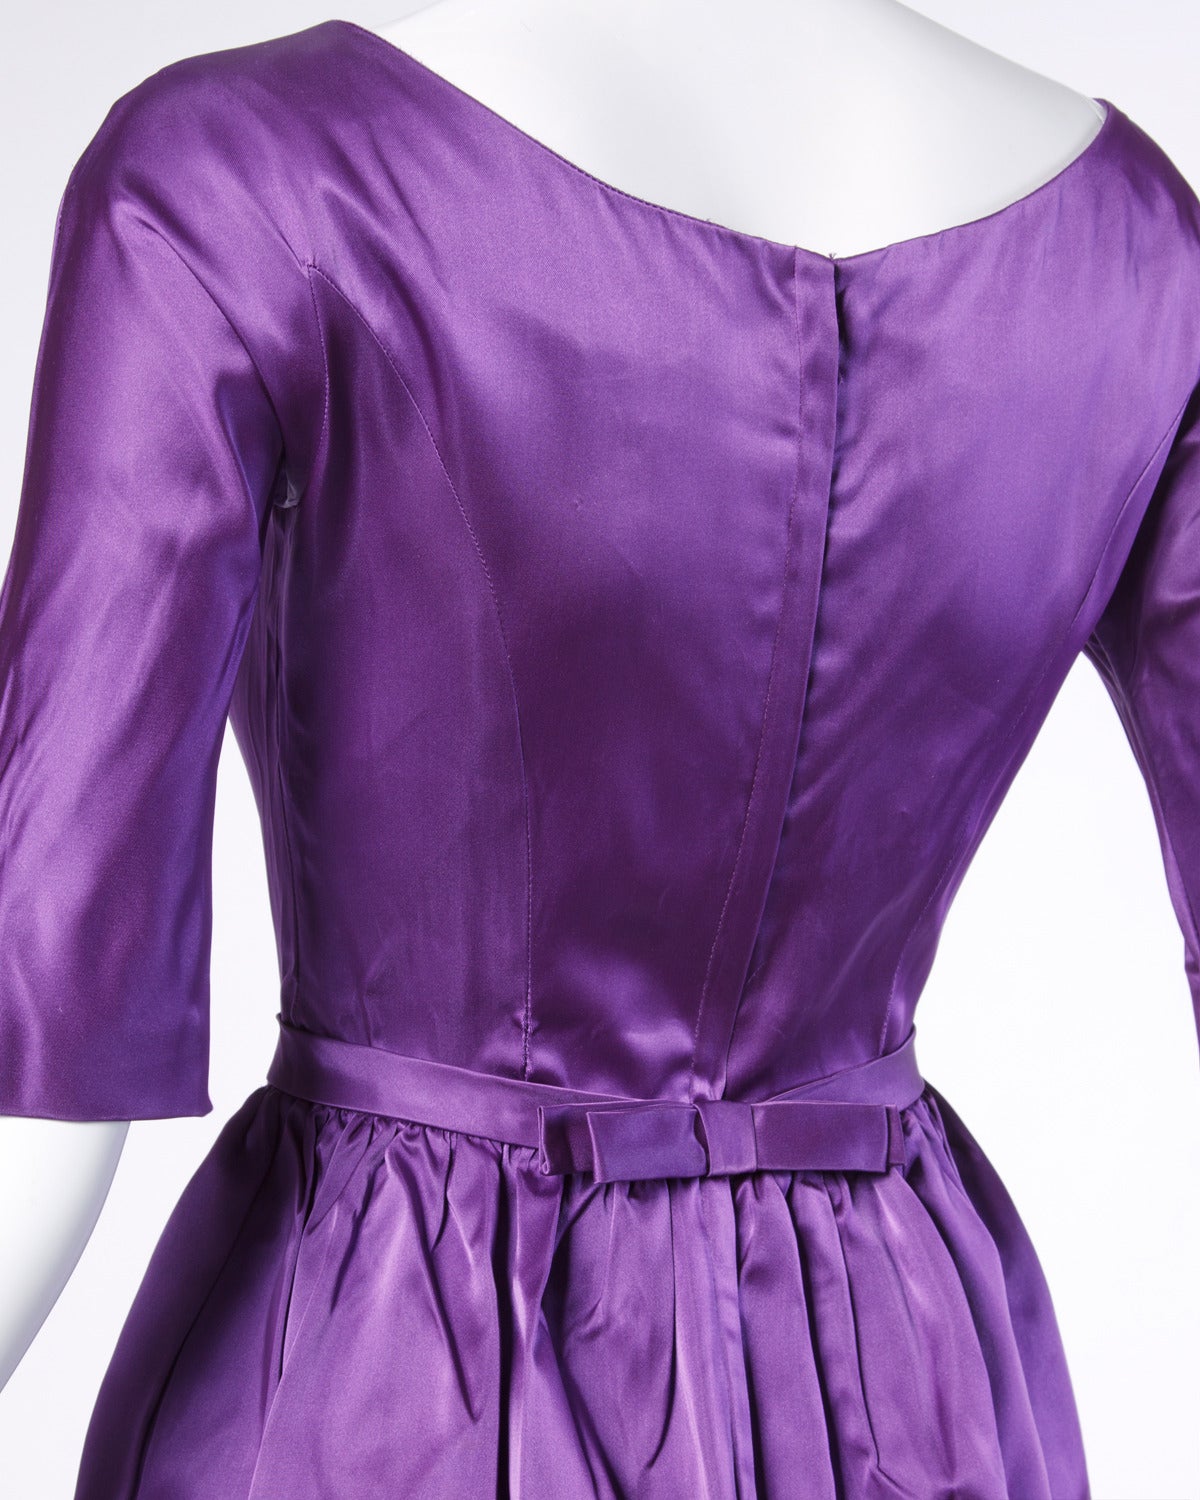 Women's Vintage 1960s 60s Purple Satin Cocktail Dress